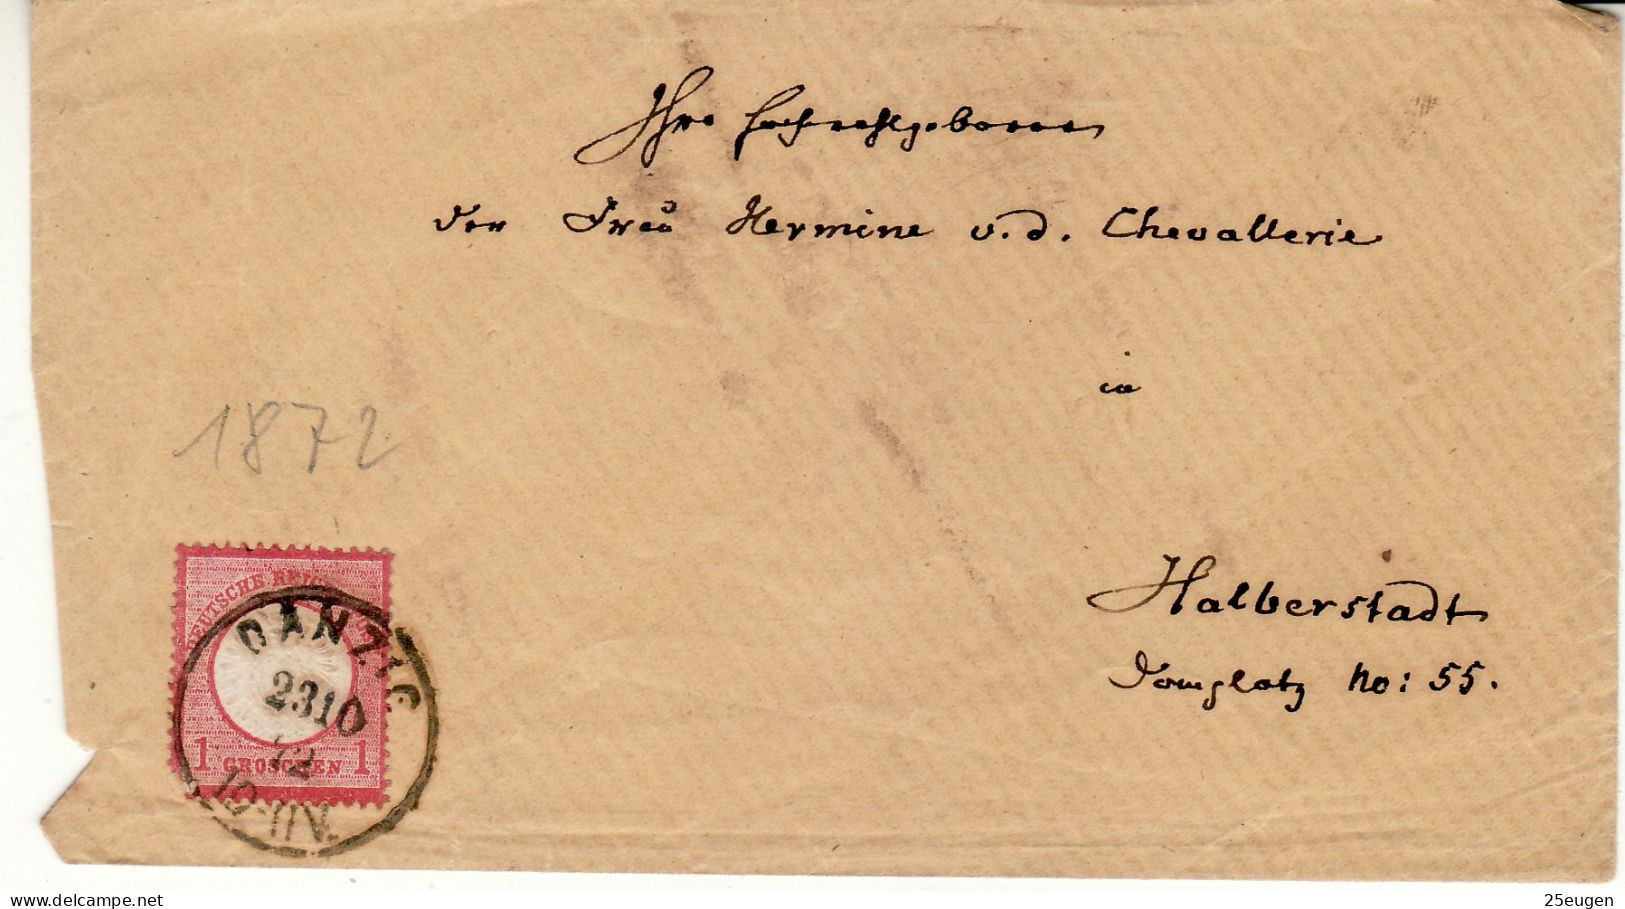 POLAND / GERMAN ANNEXATION 1872  LETTER  SENT FROM  GDAŃSK / DANZIG /  TO HALBERSTADT - Cartas & Documentos